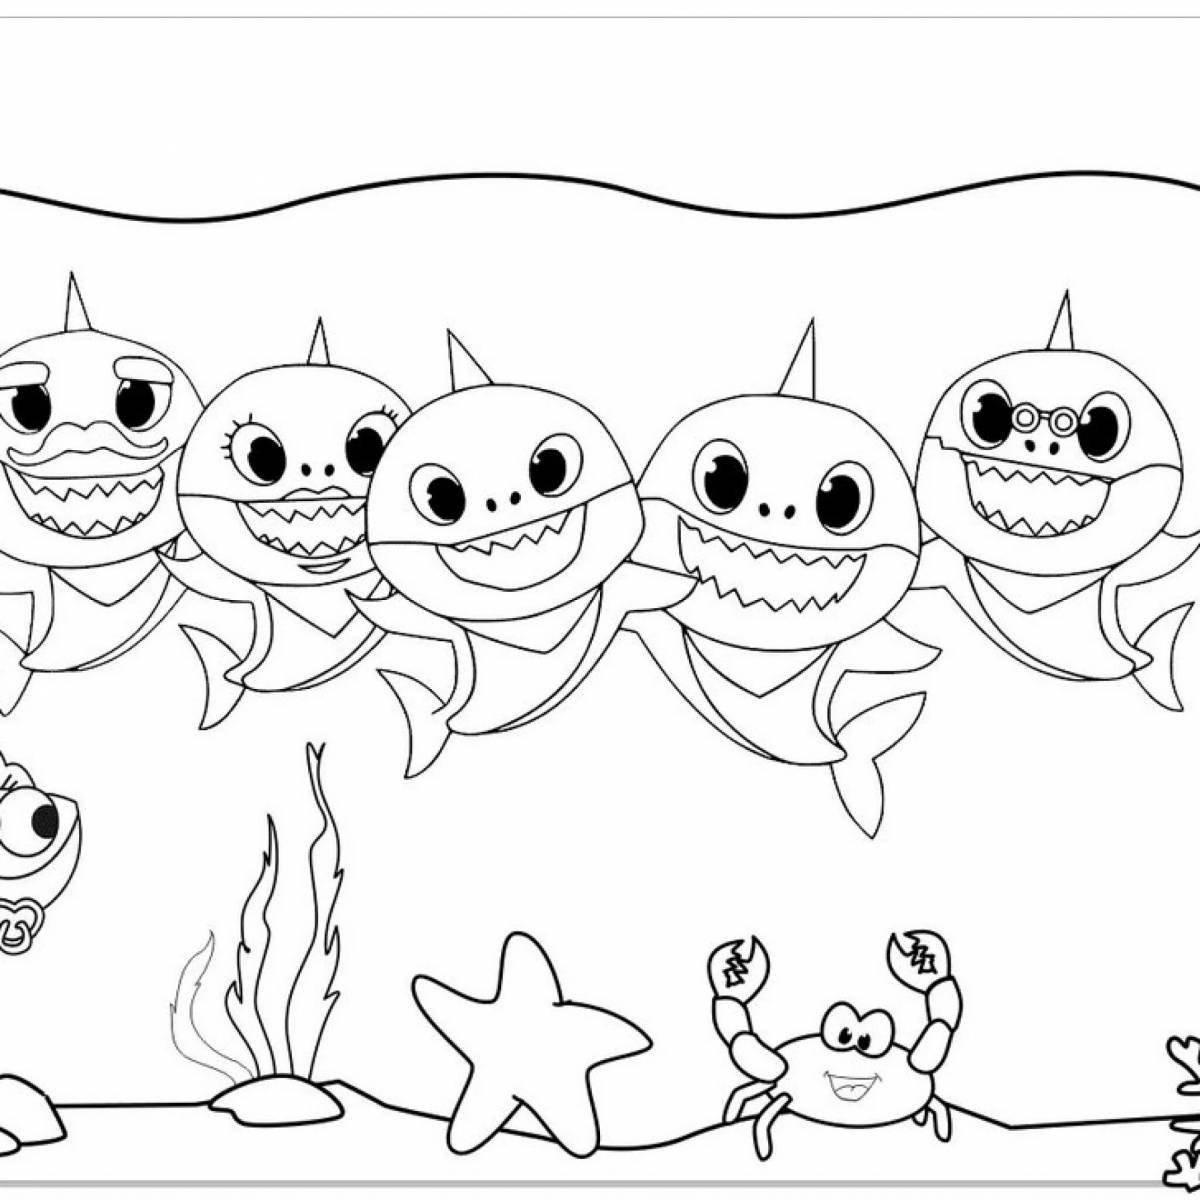 Веселая акула-раскраска для детей